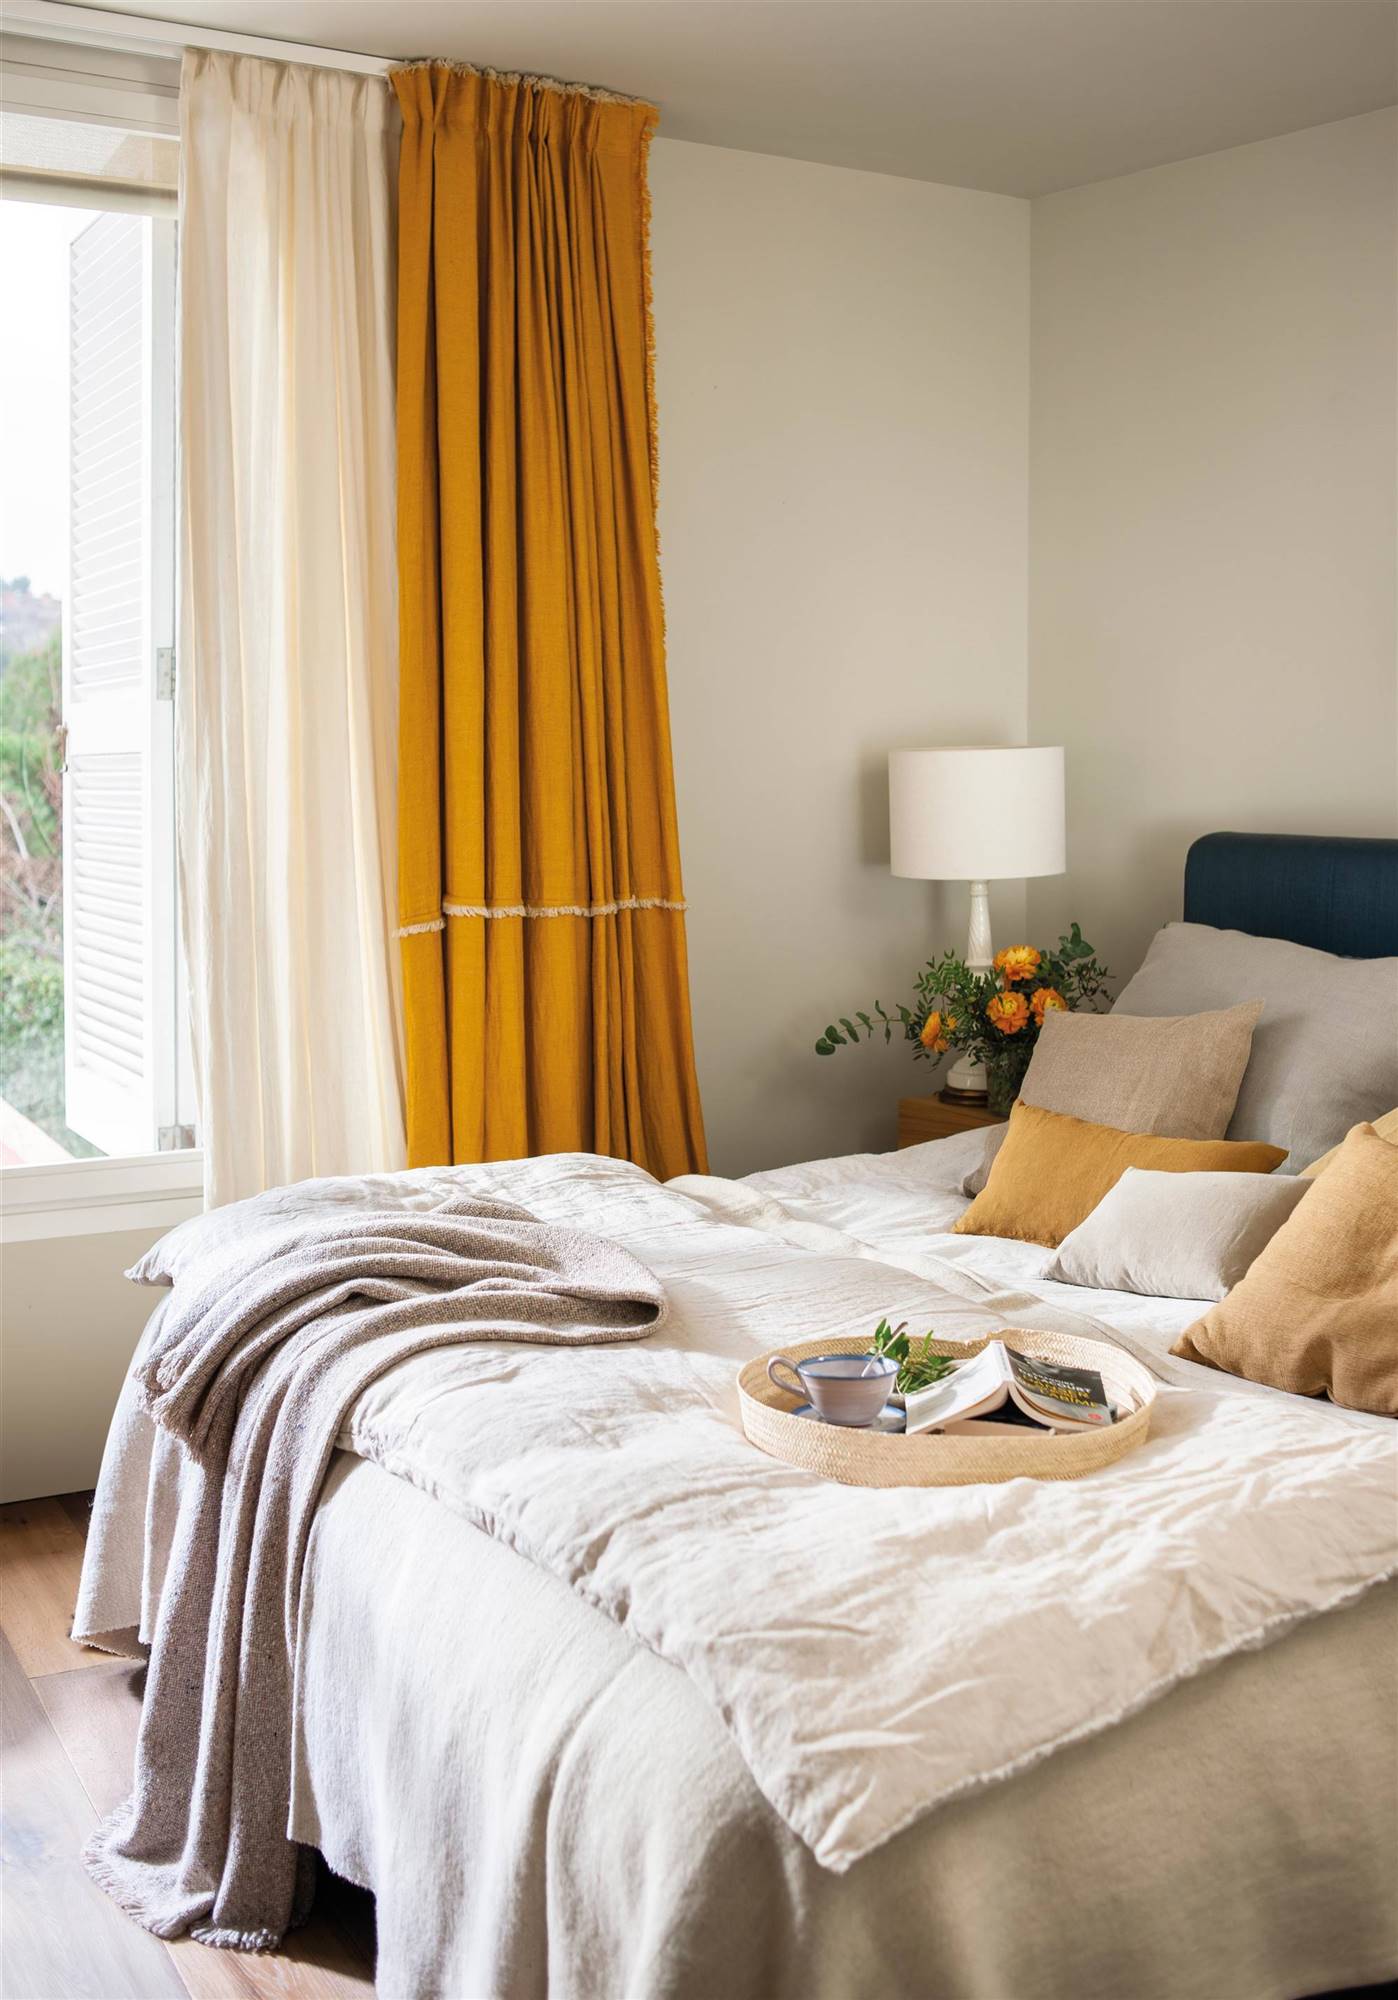 Dormitorio con cortinas de lino en color mostaza.